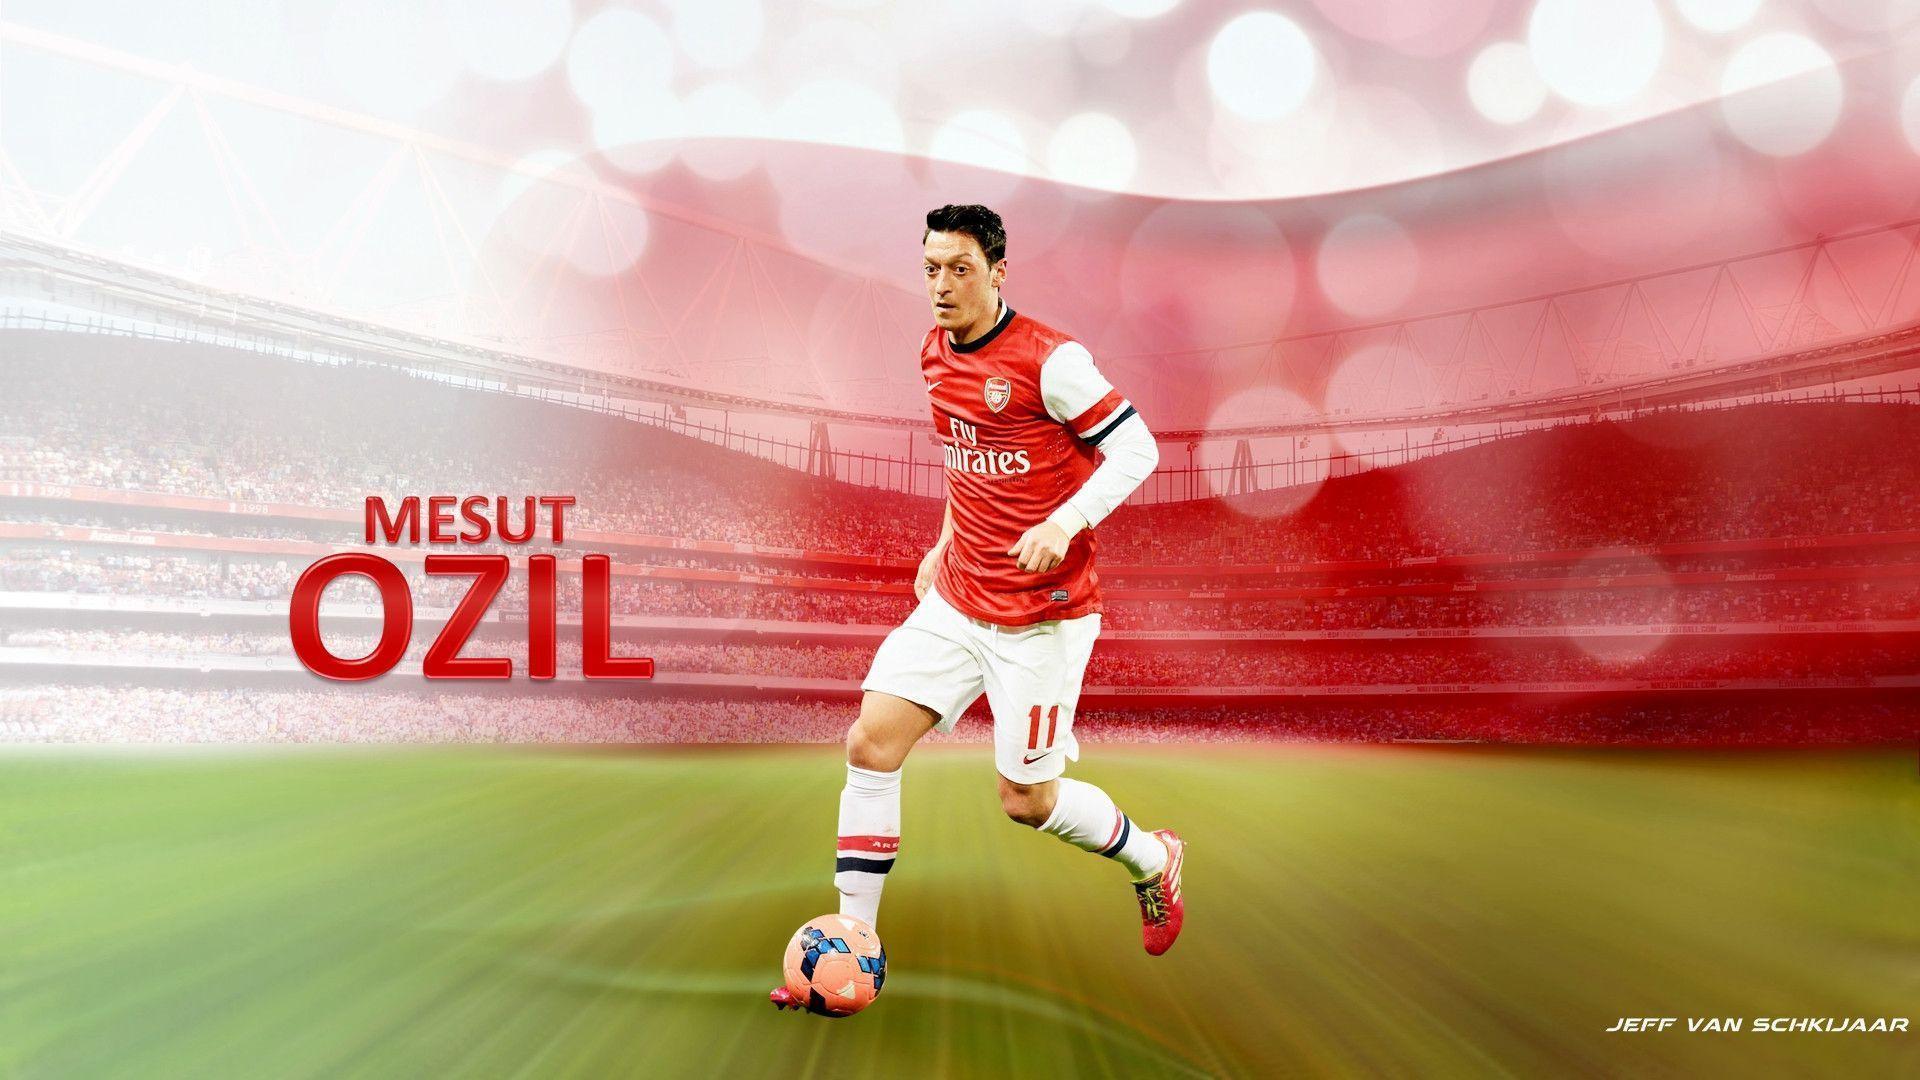 Mesut Ozil Arsenal football club high quality wallpaper 2014